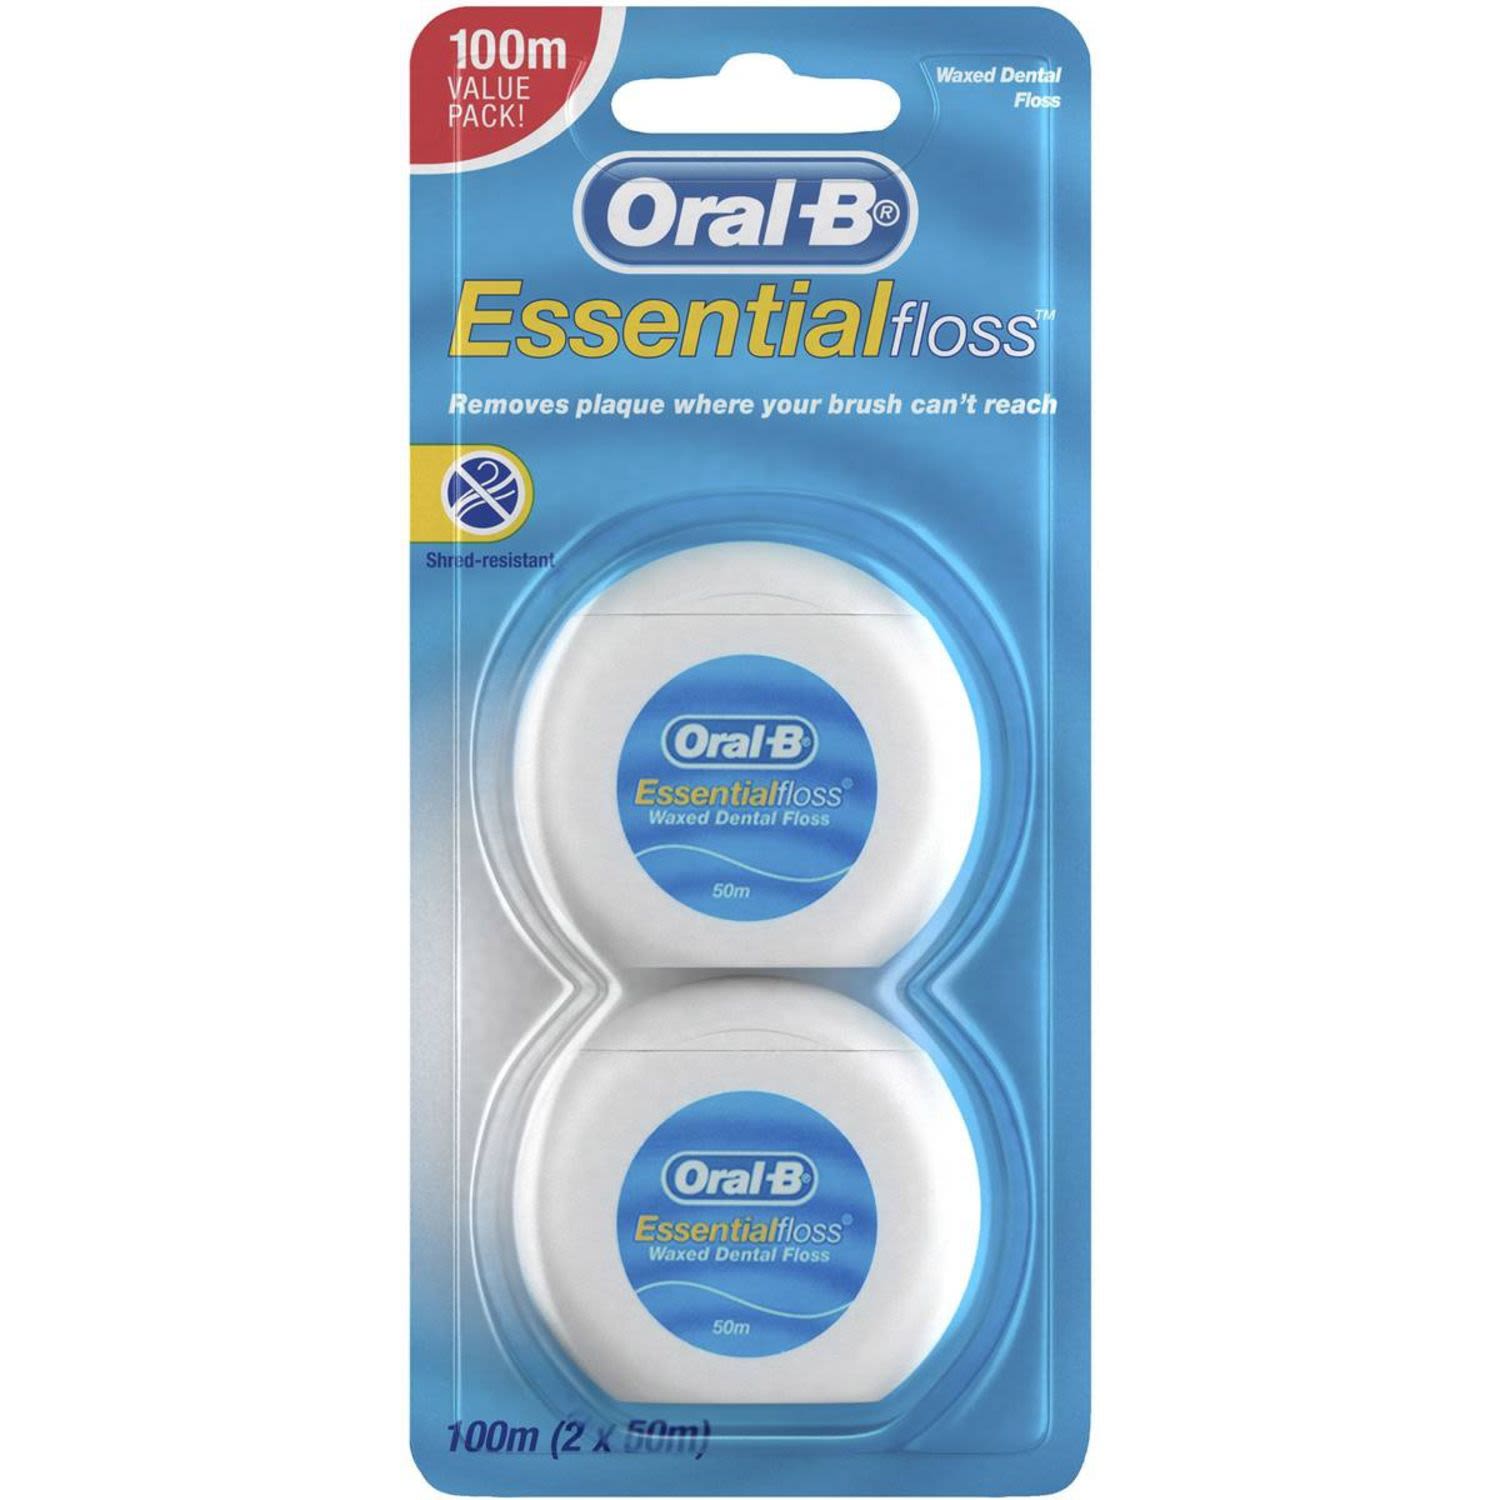 Oral-B Essential Floss Dental Floss 50m, 2 Each